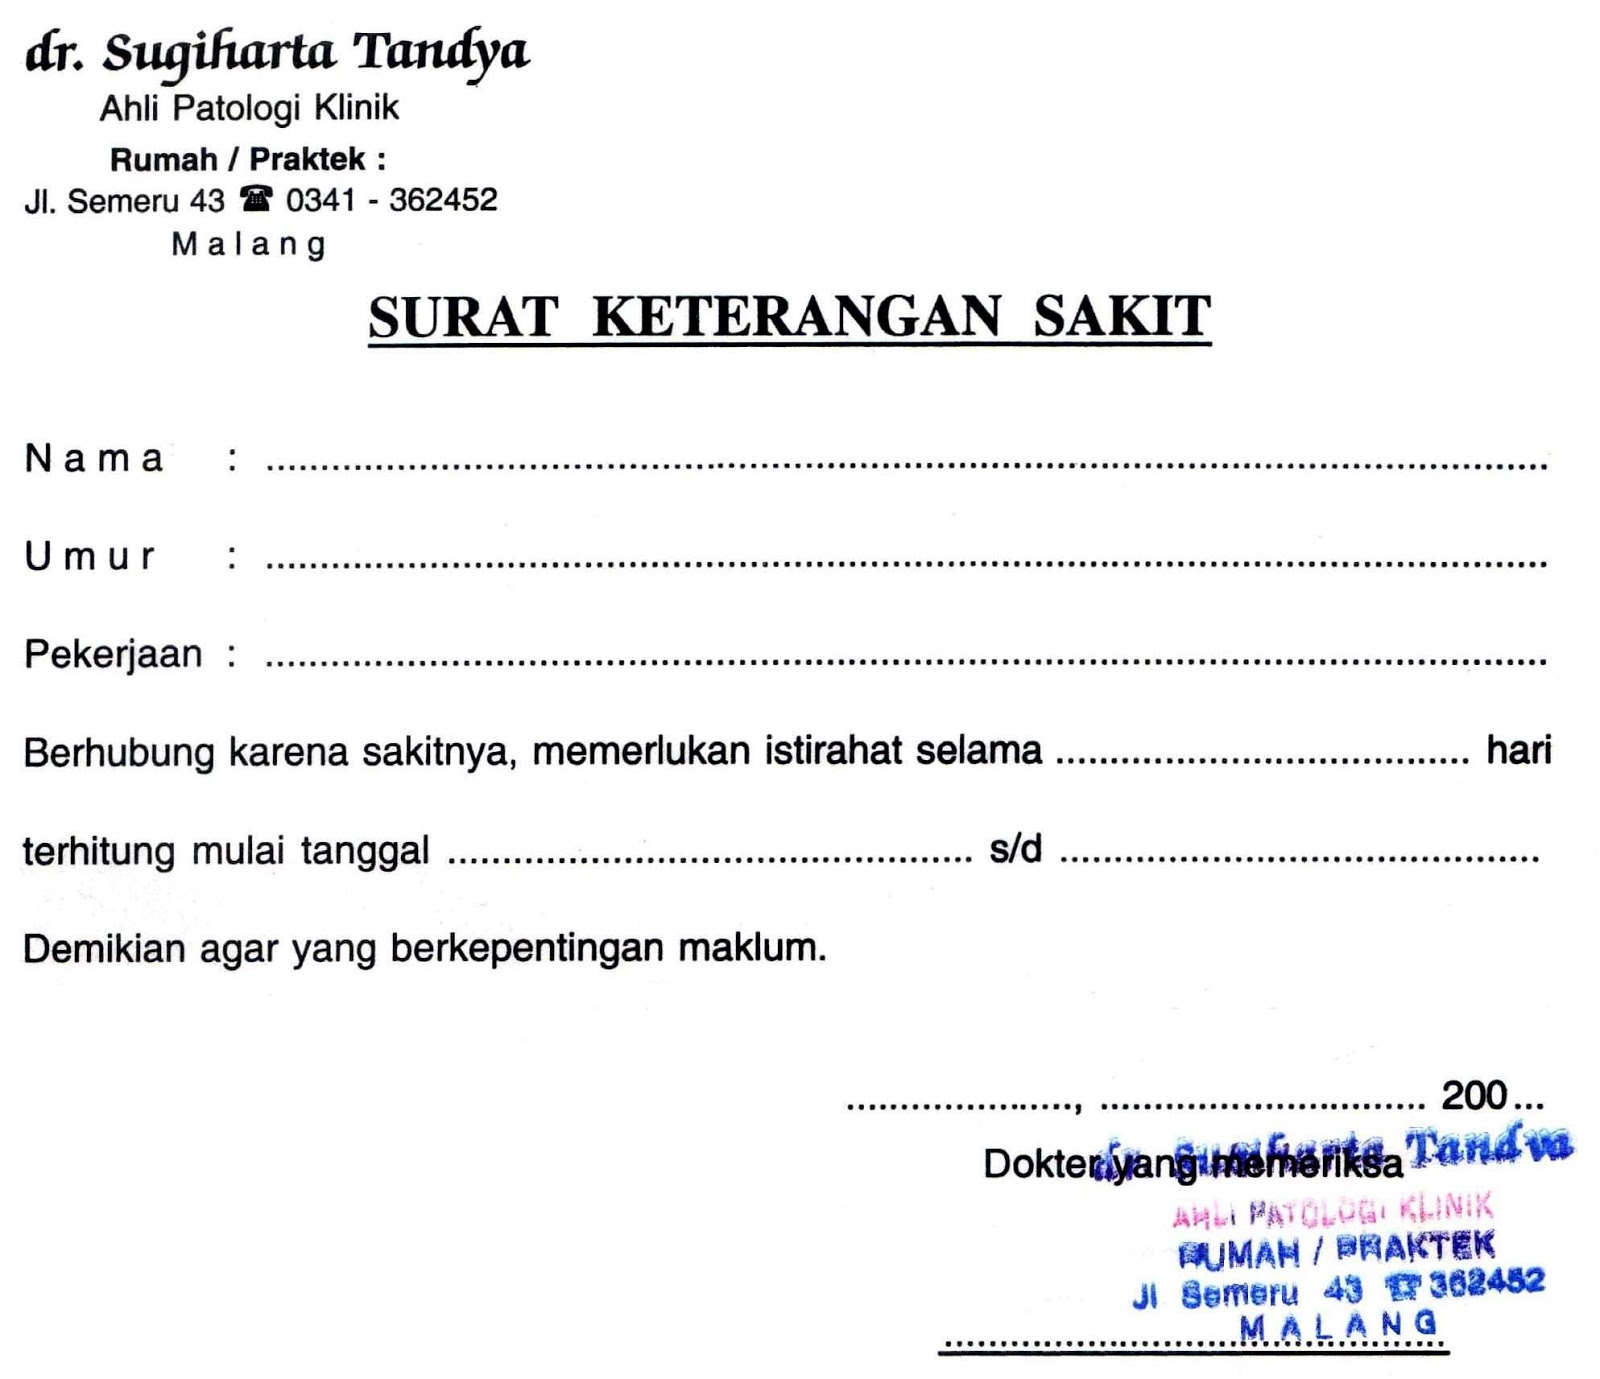 Contoh Surat Dokter Surakarta - Contoh Surat Cuti Sakit 